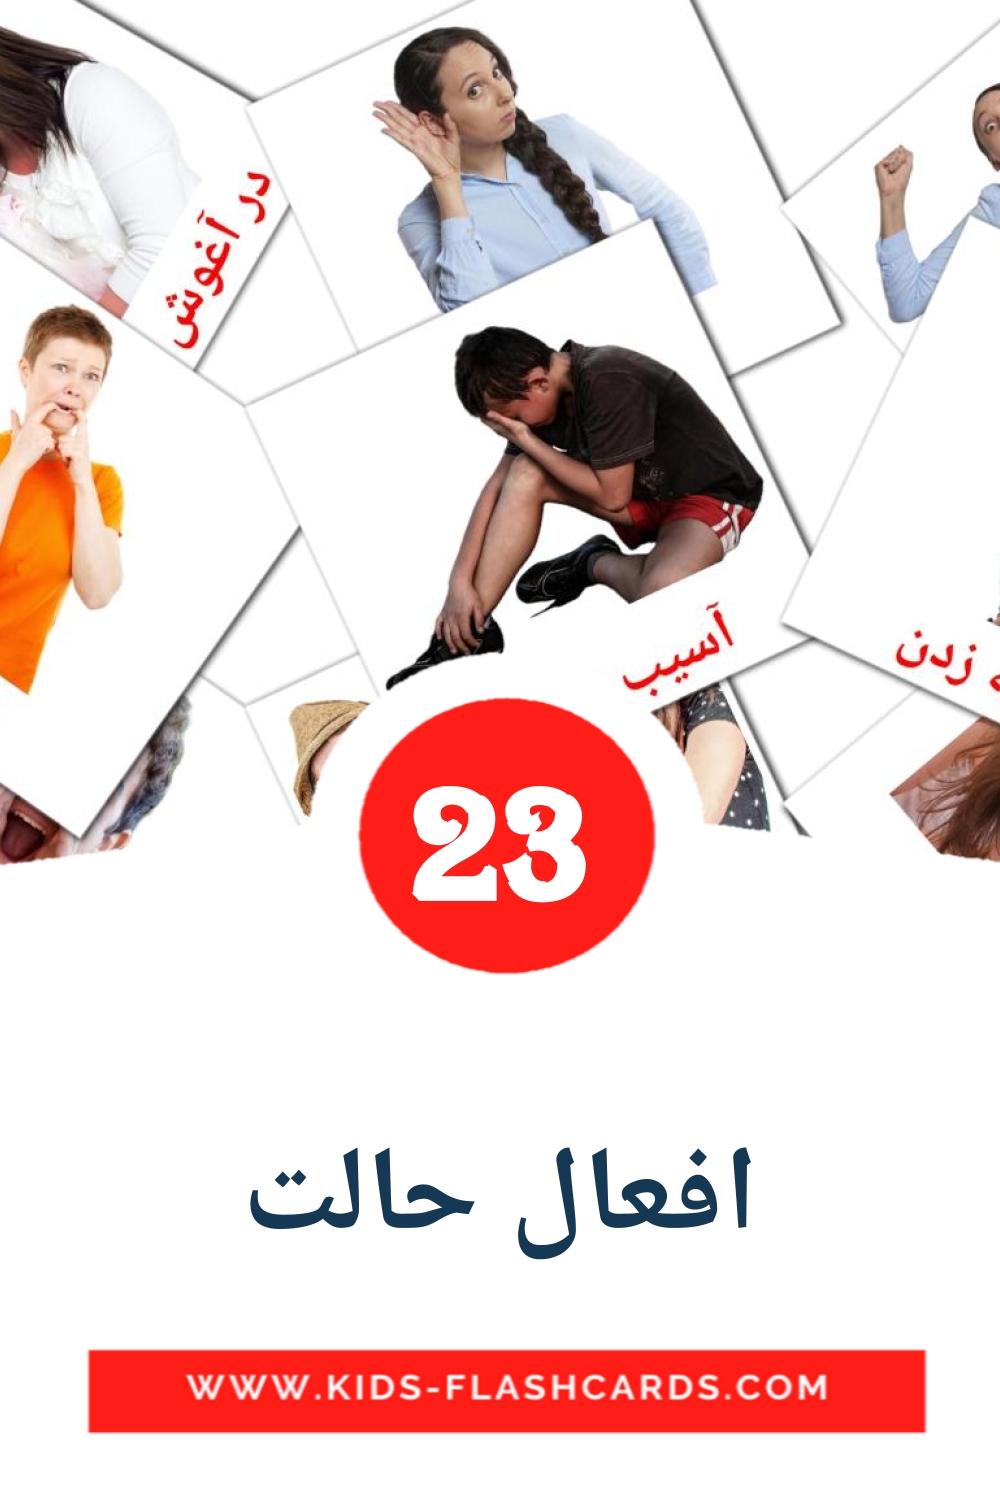 23 carte illustrate di افعال حالت per la scuola materna in persiano